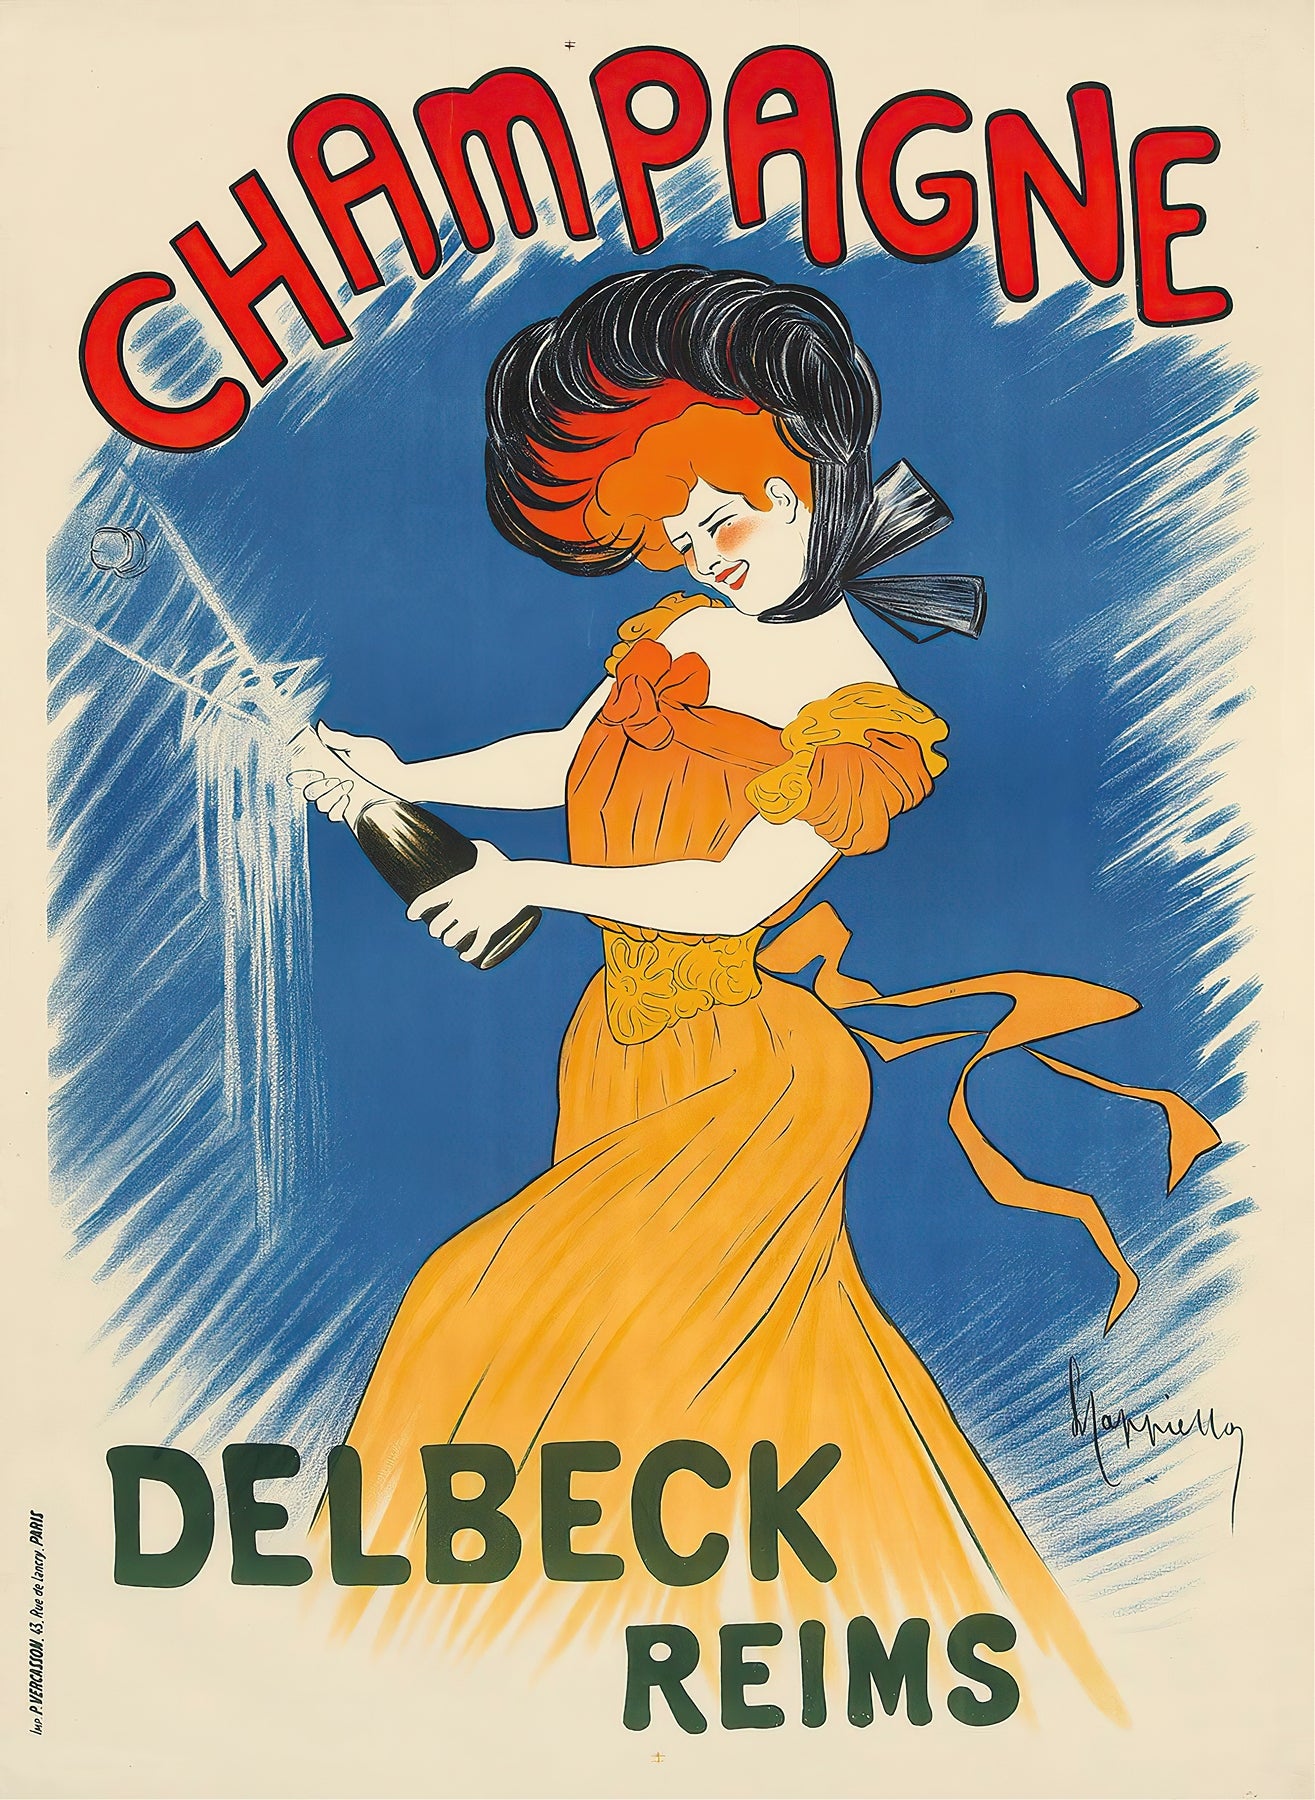 Delbeck, Reims (1900s) | Vintage Champagne posters | Leonetto Cappiello Posters, Prints, & Visual Artwork The Trumpet Shop   